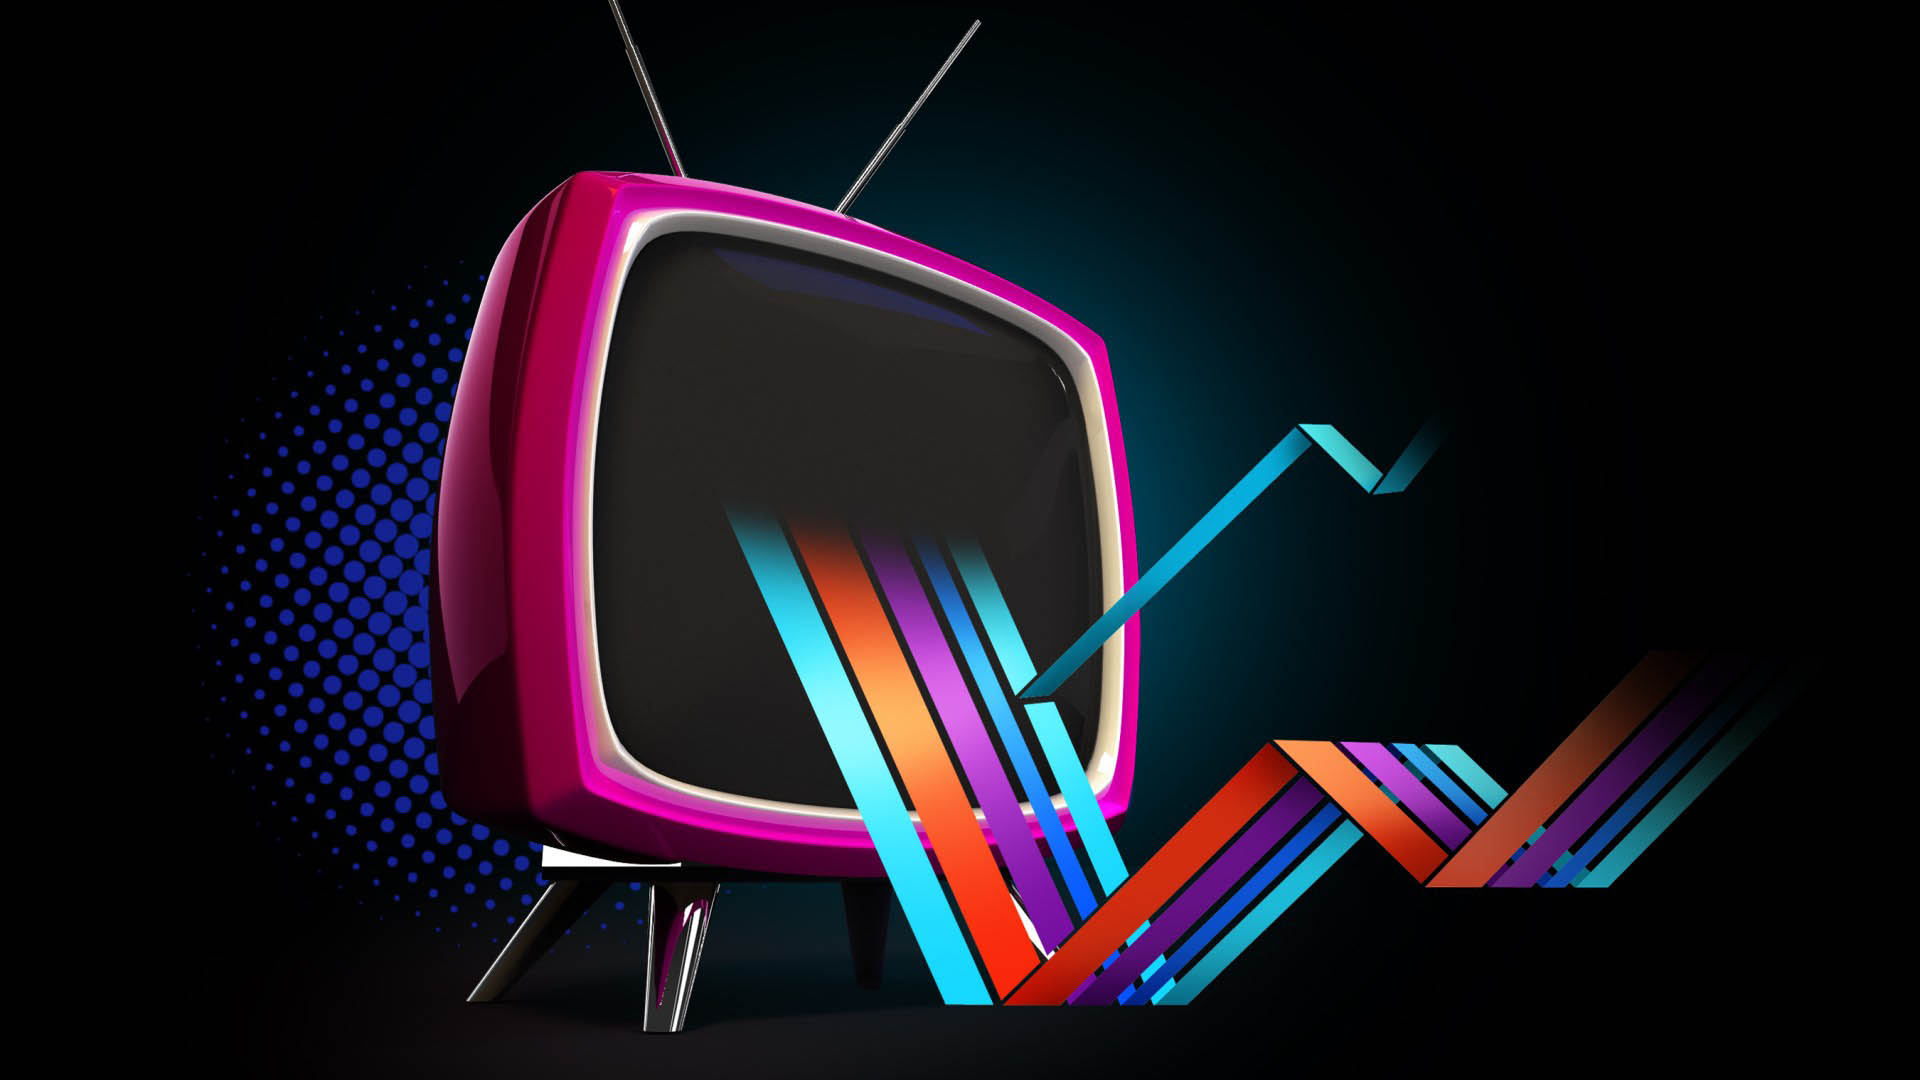 24 Ekim – Reyting sonuçları açıklandı! Hangi dizi birinci oldu?